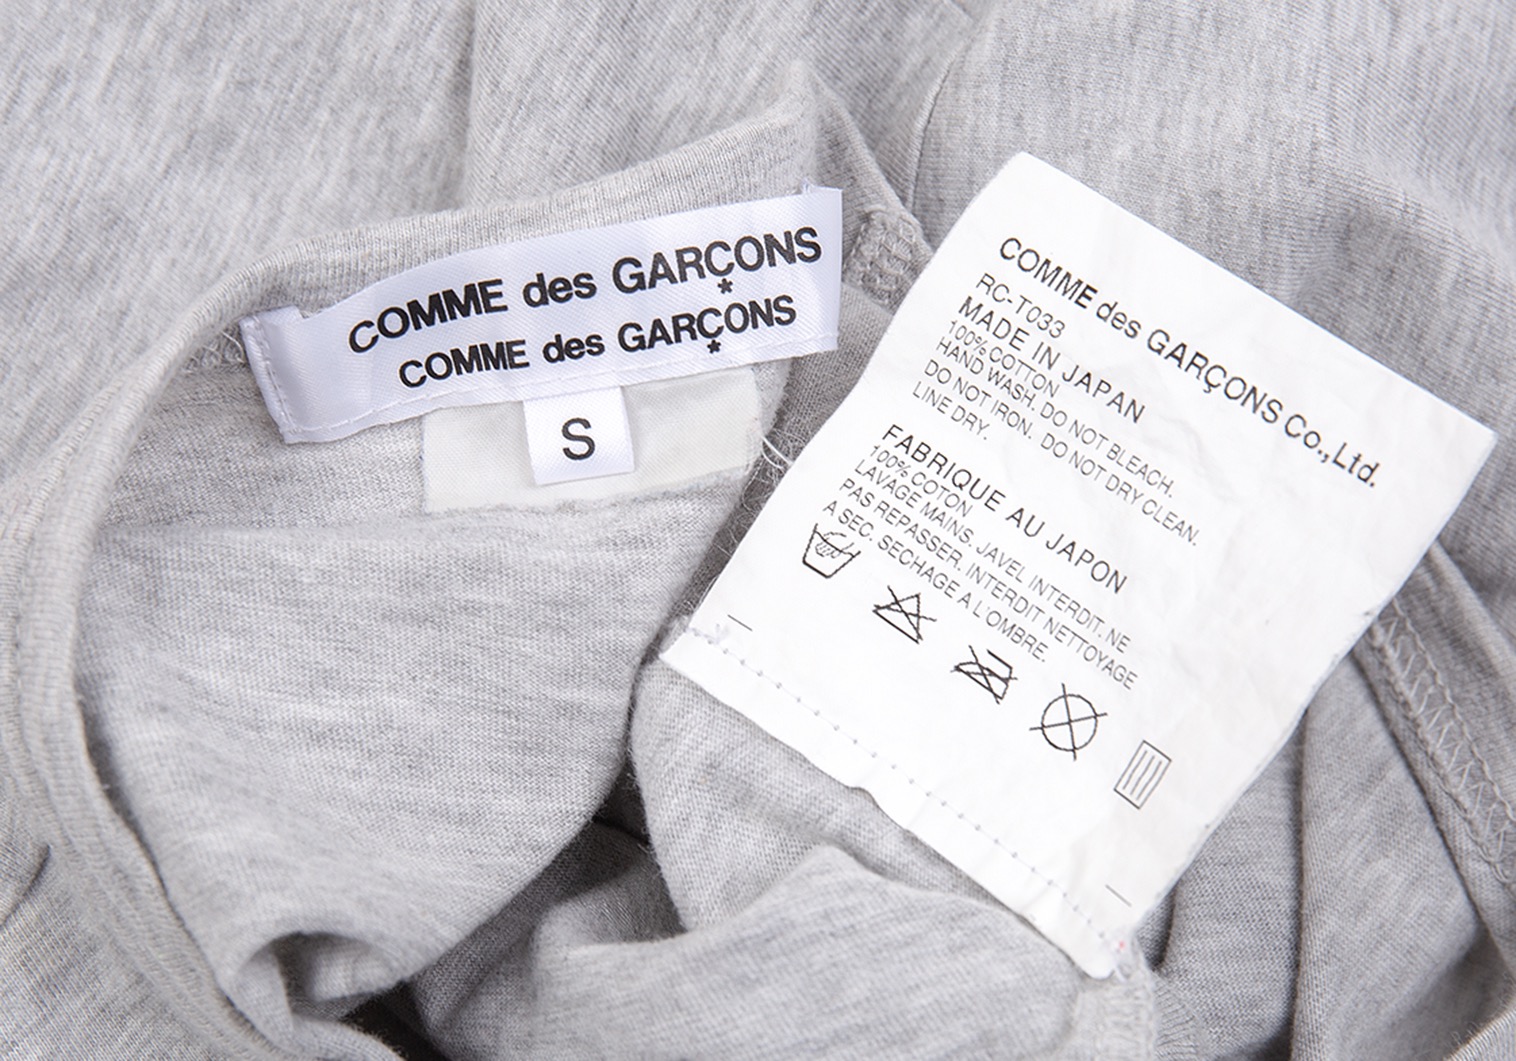 コムコム コムデギャルソンCOMME des GARCONS リボンTシャツ 杢グレー黒S